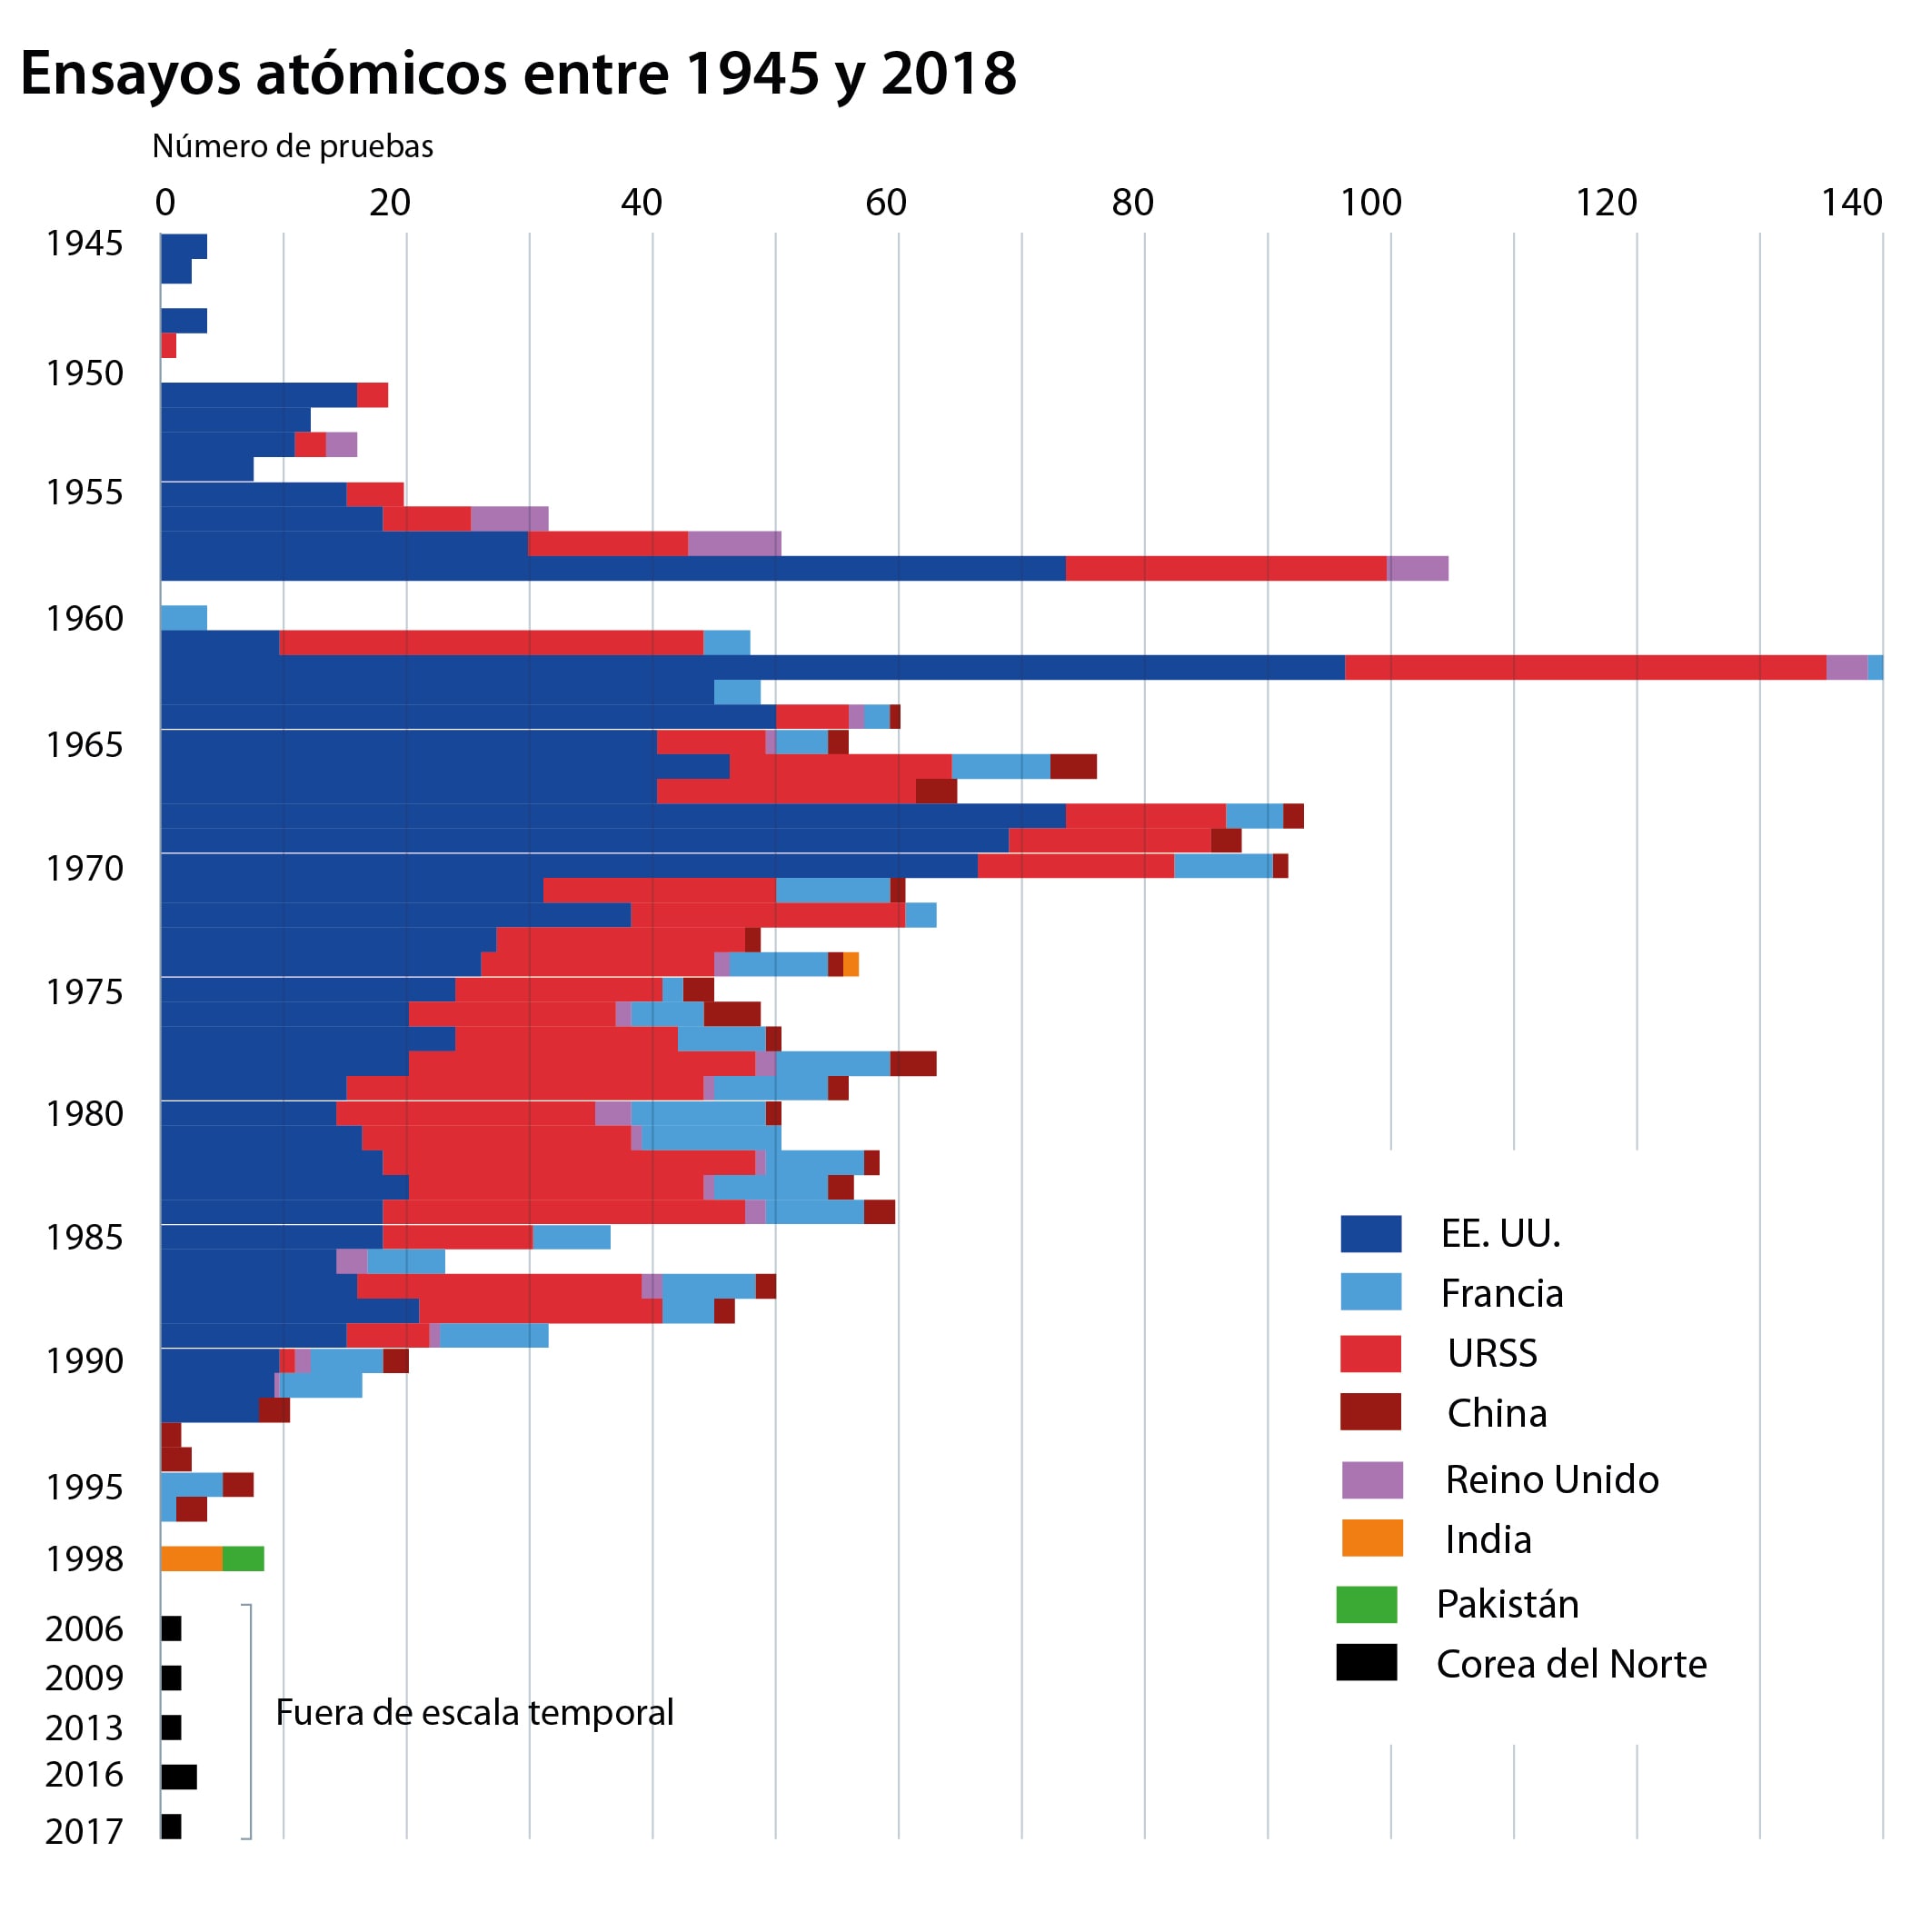 Evolución de los ensayos atómicos realizados entre 1945 y 2018